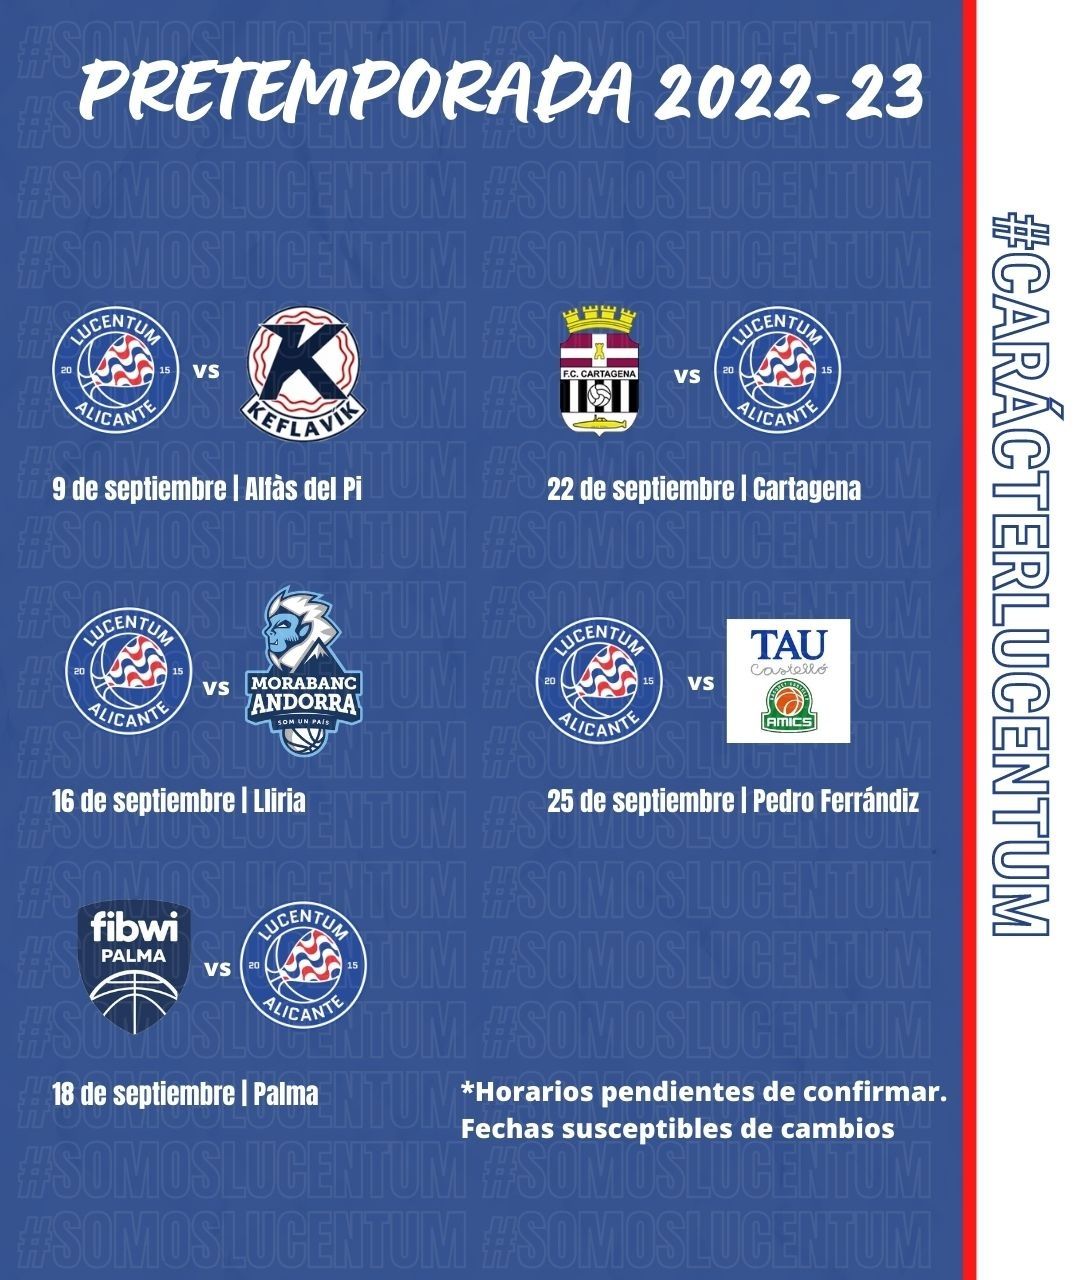 Calendario de amistosos facilitado por el HLA Alicante a los medios de comunicación.